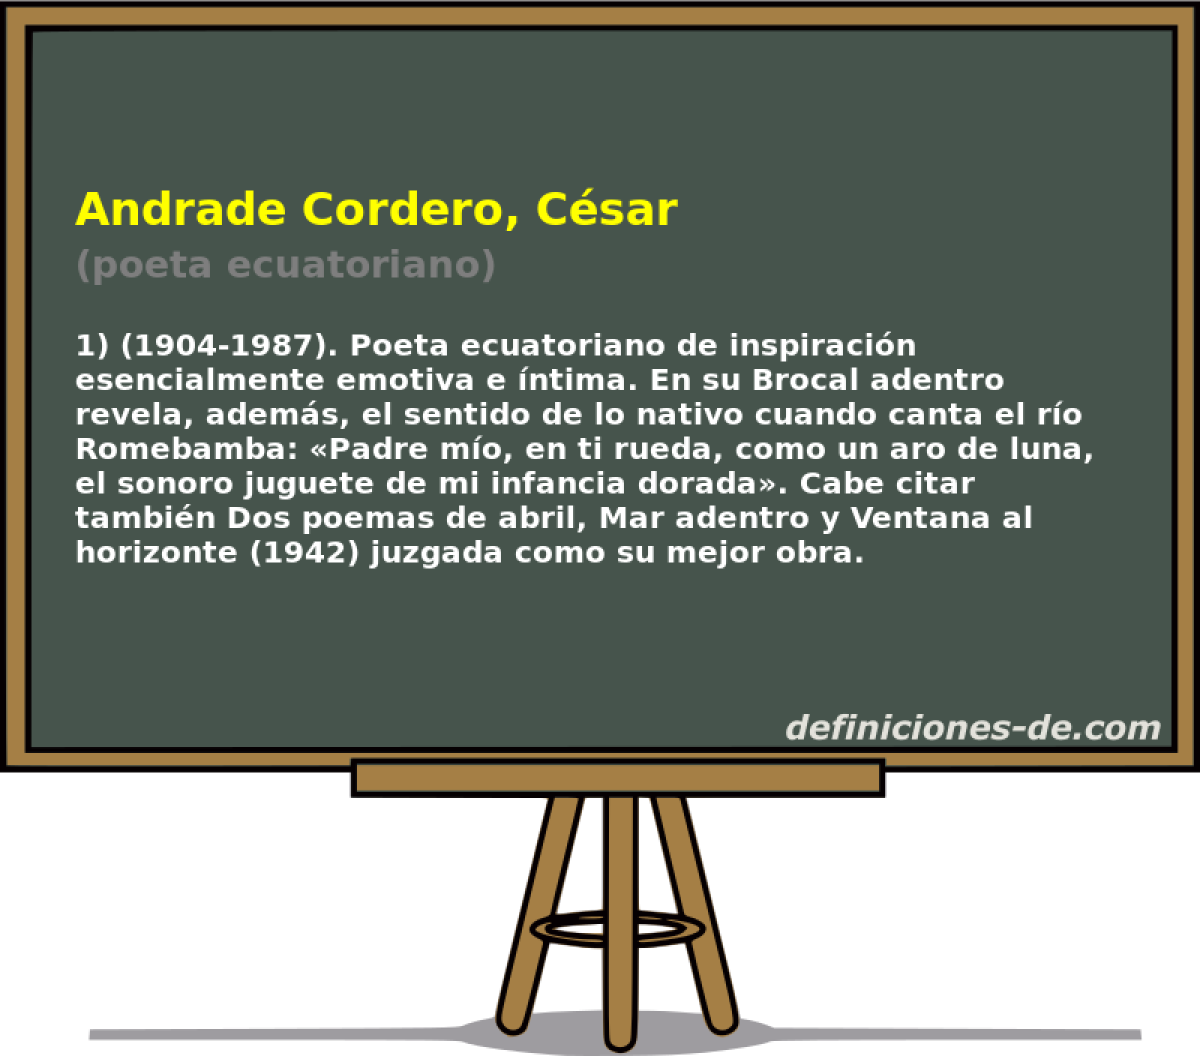 Andrade Cordero, Csar (poeta ecuatoriano)